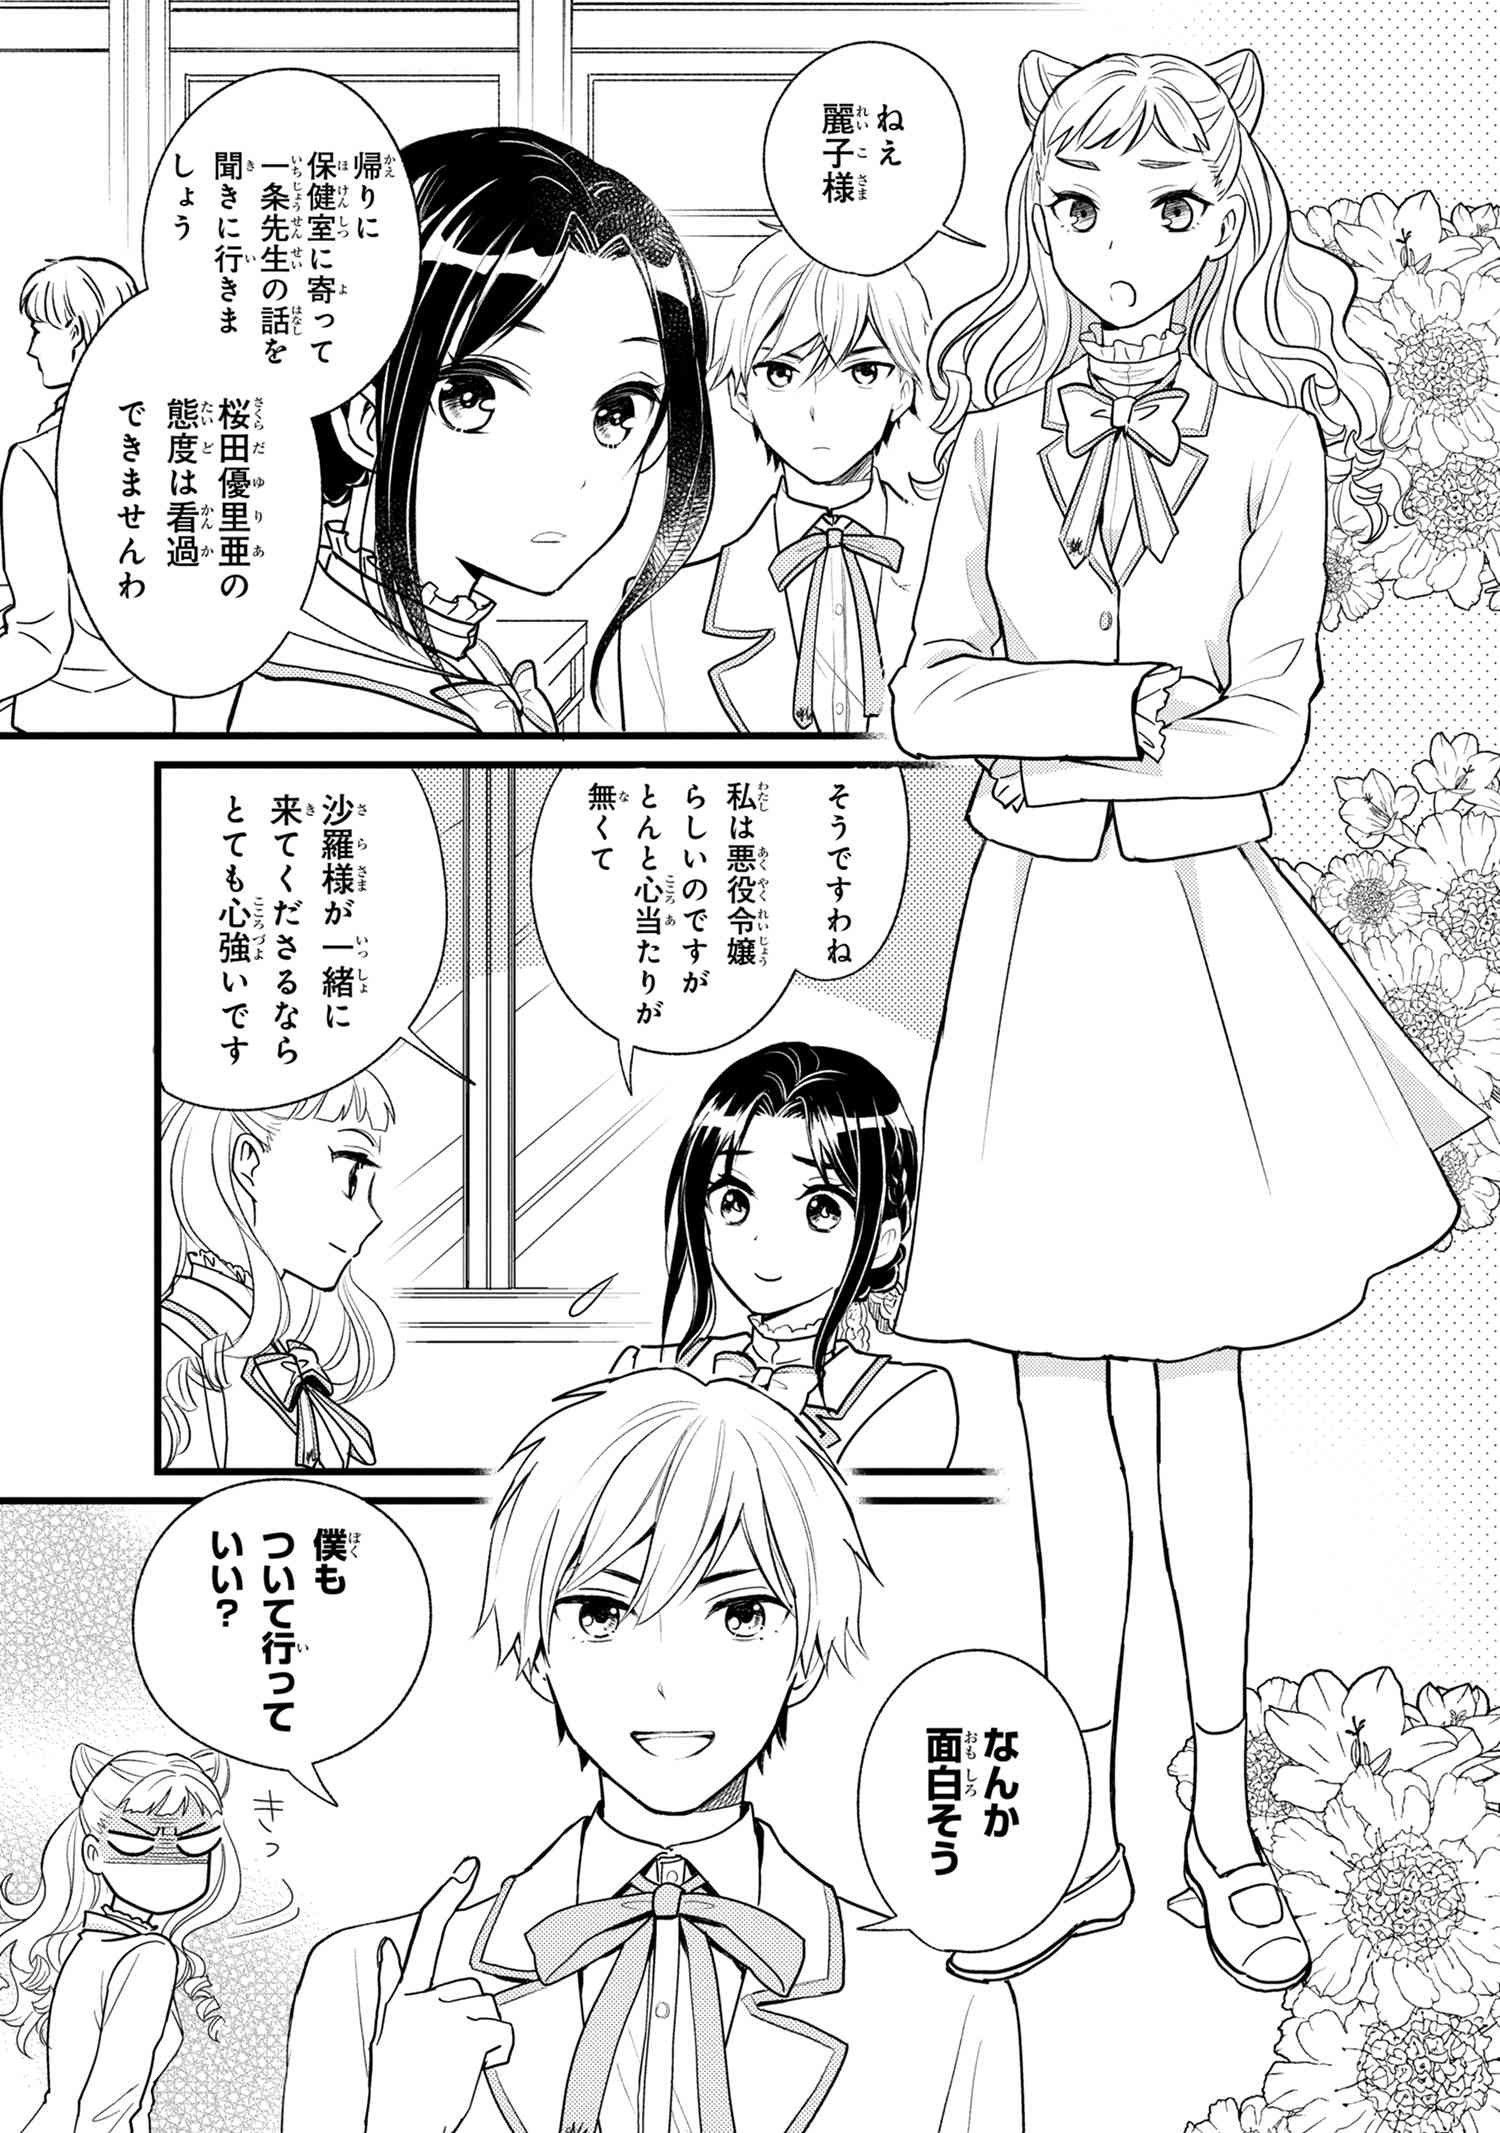 Reiko no Fuugi Akuyaku Reijou to Yobarete imasu ga, tada no Binbou Musume desu - Chapter 2-1 - Page 3